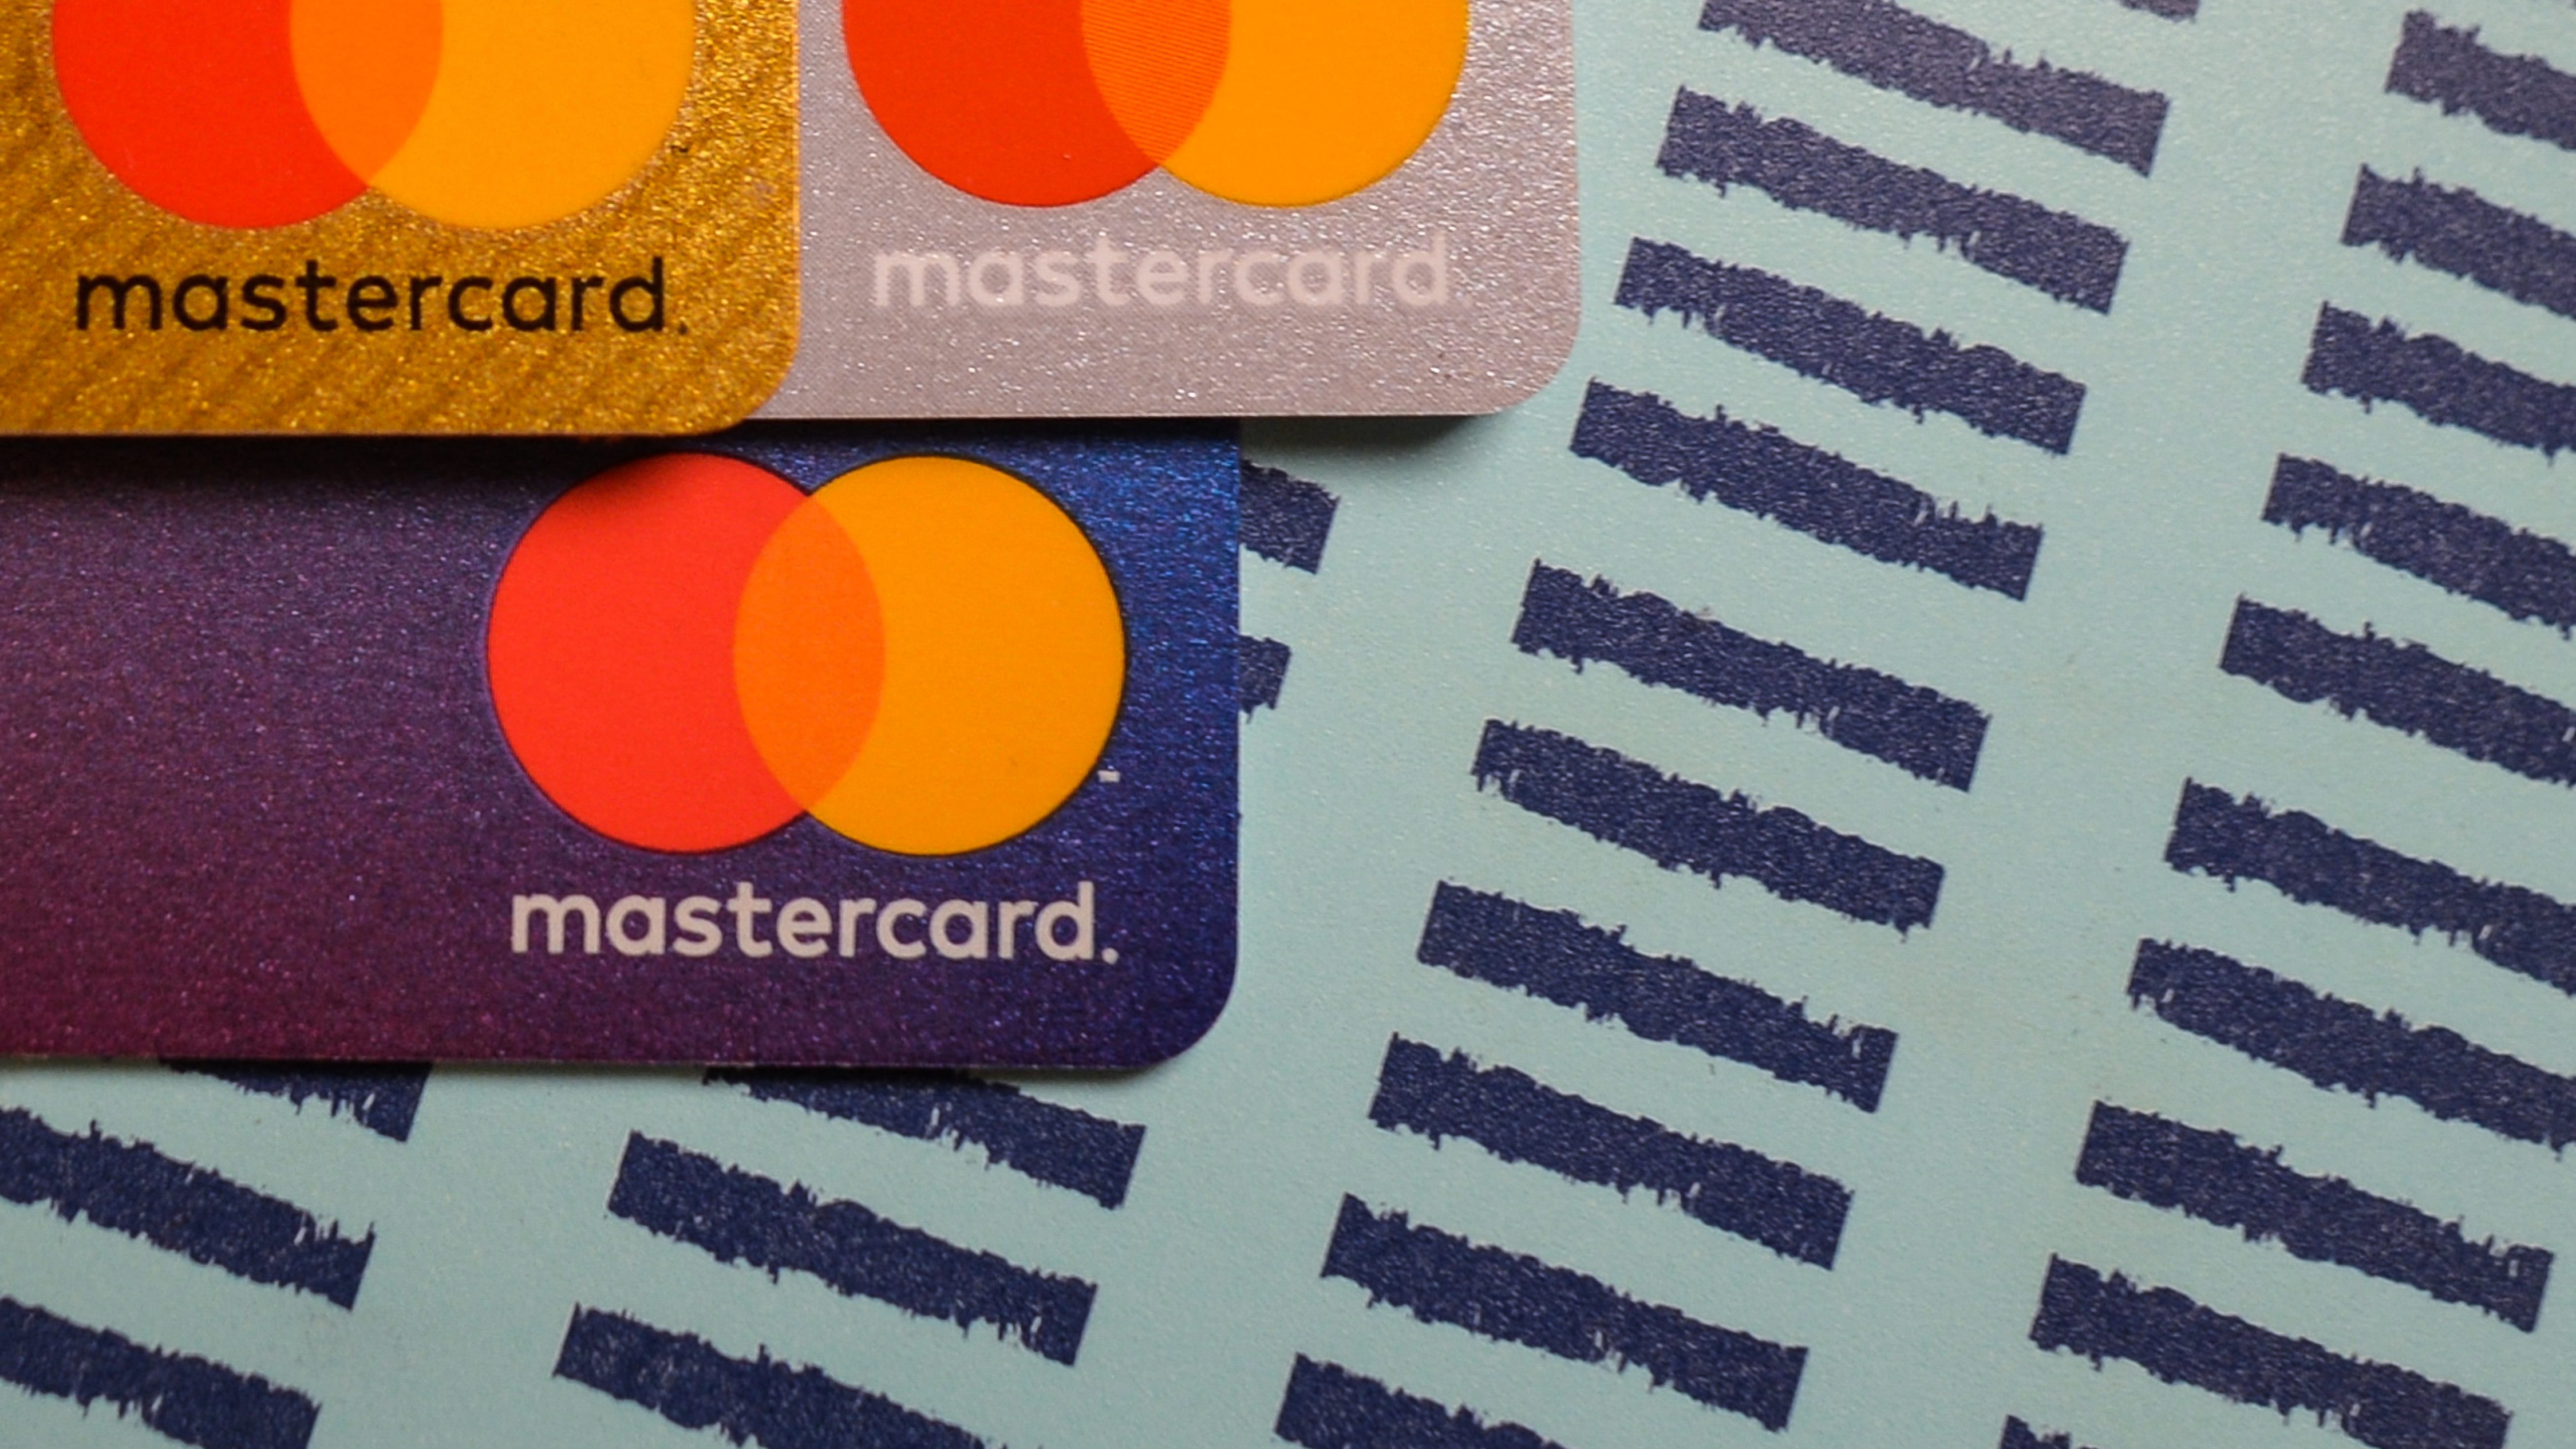 Nem bocsáthat ki több kártyát a Mastercard Indiában